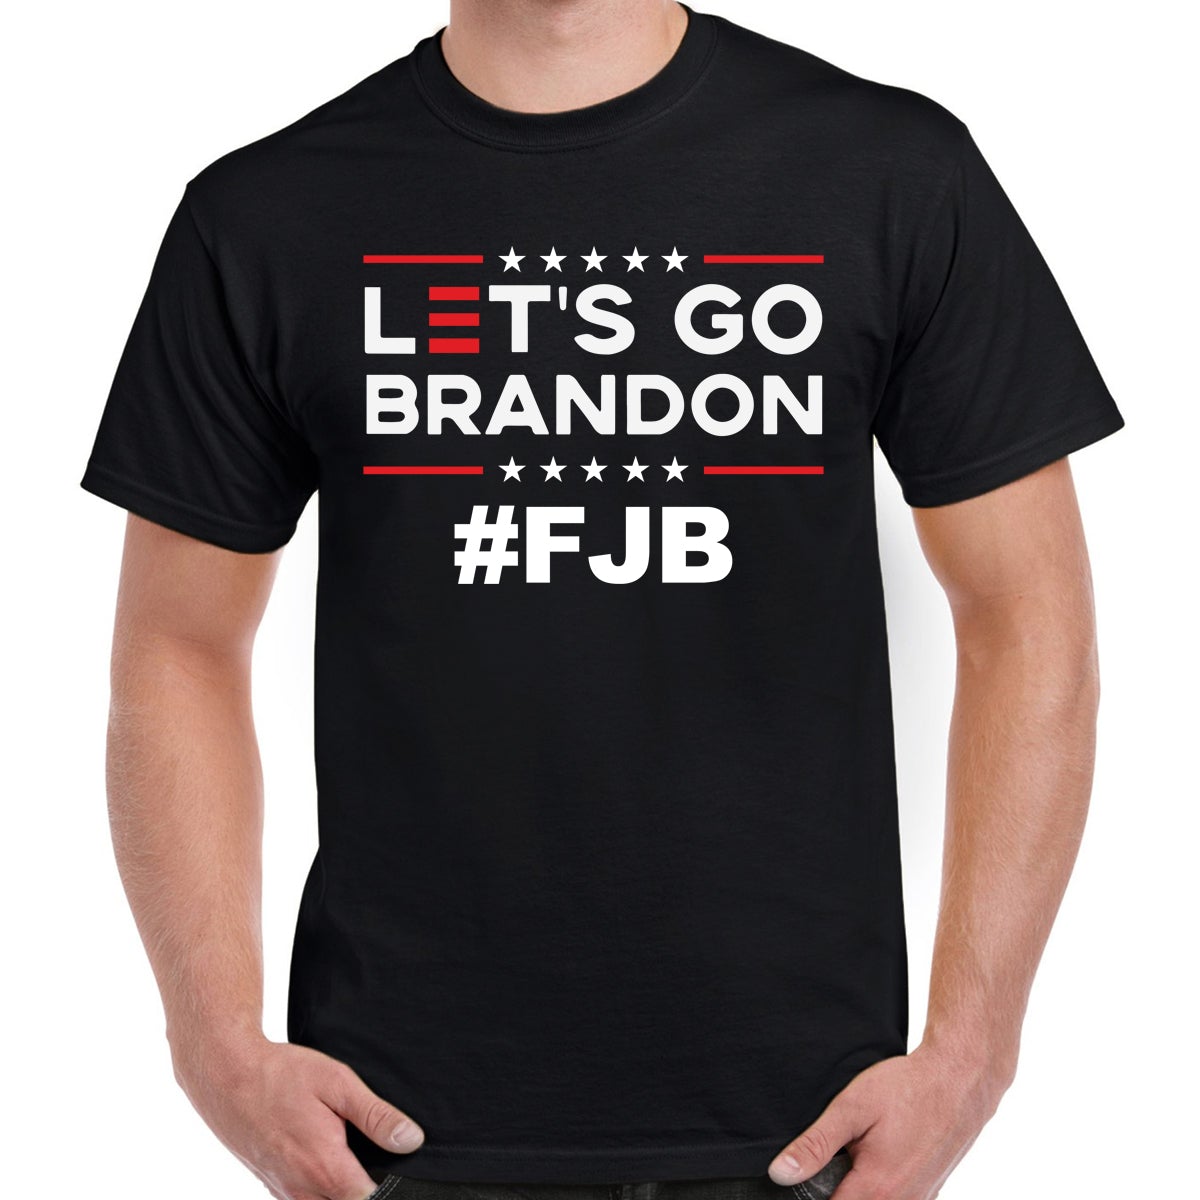 Let's Go Brandon T-Shirts